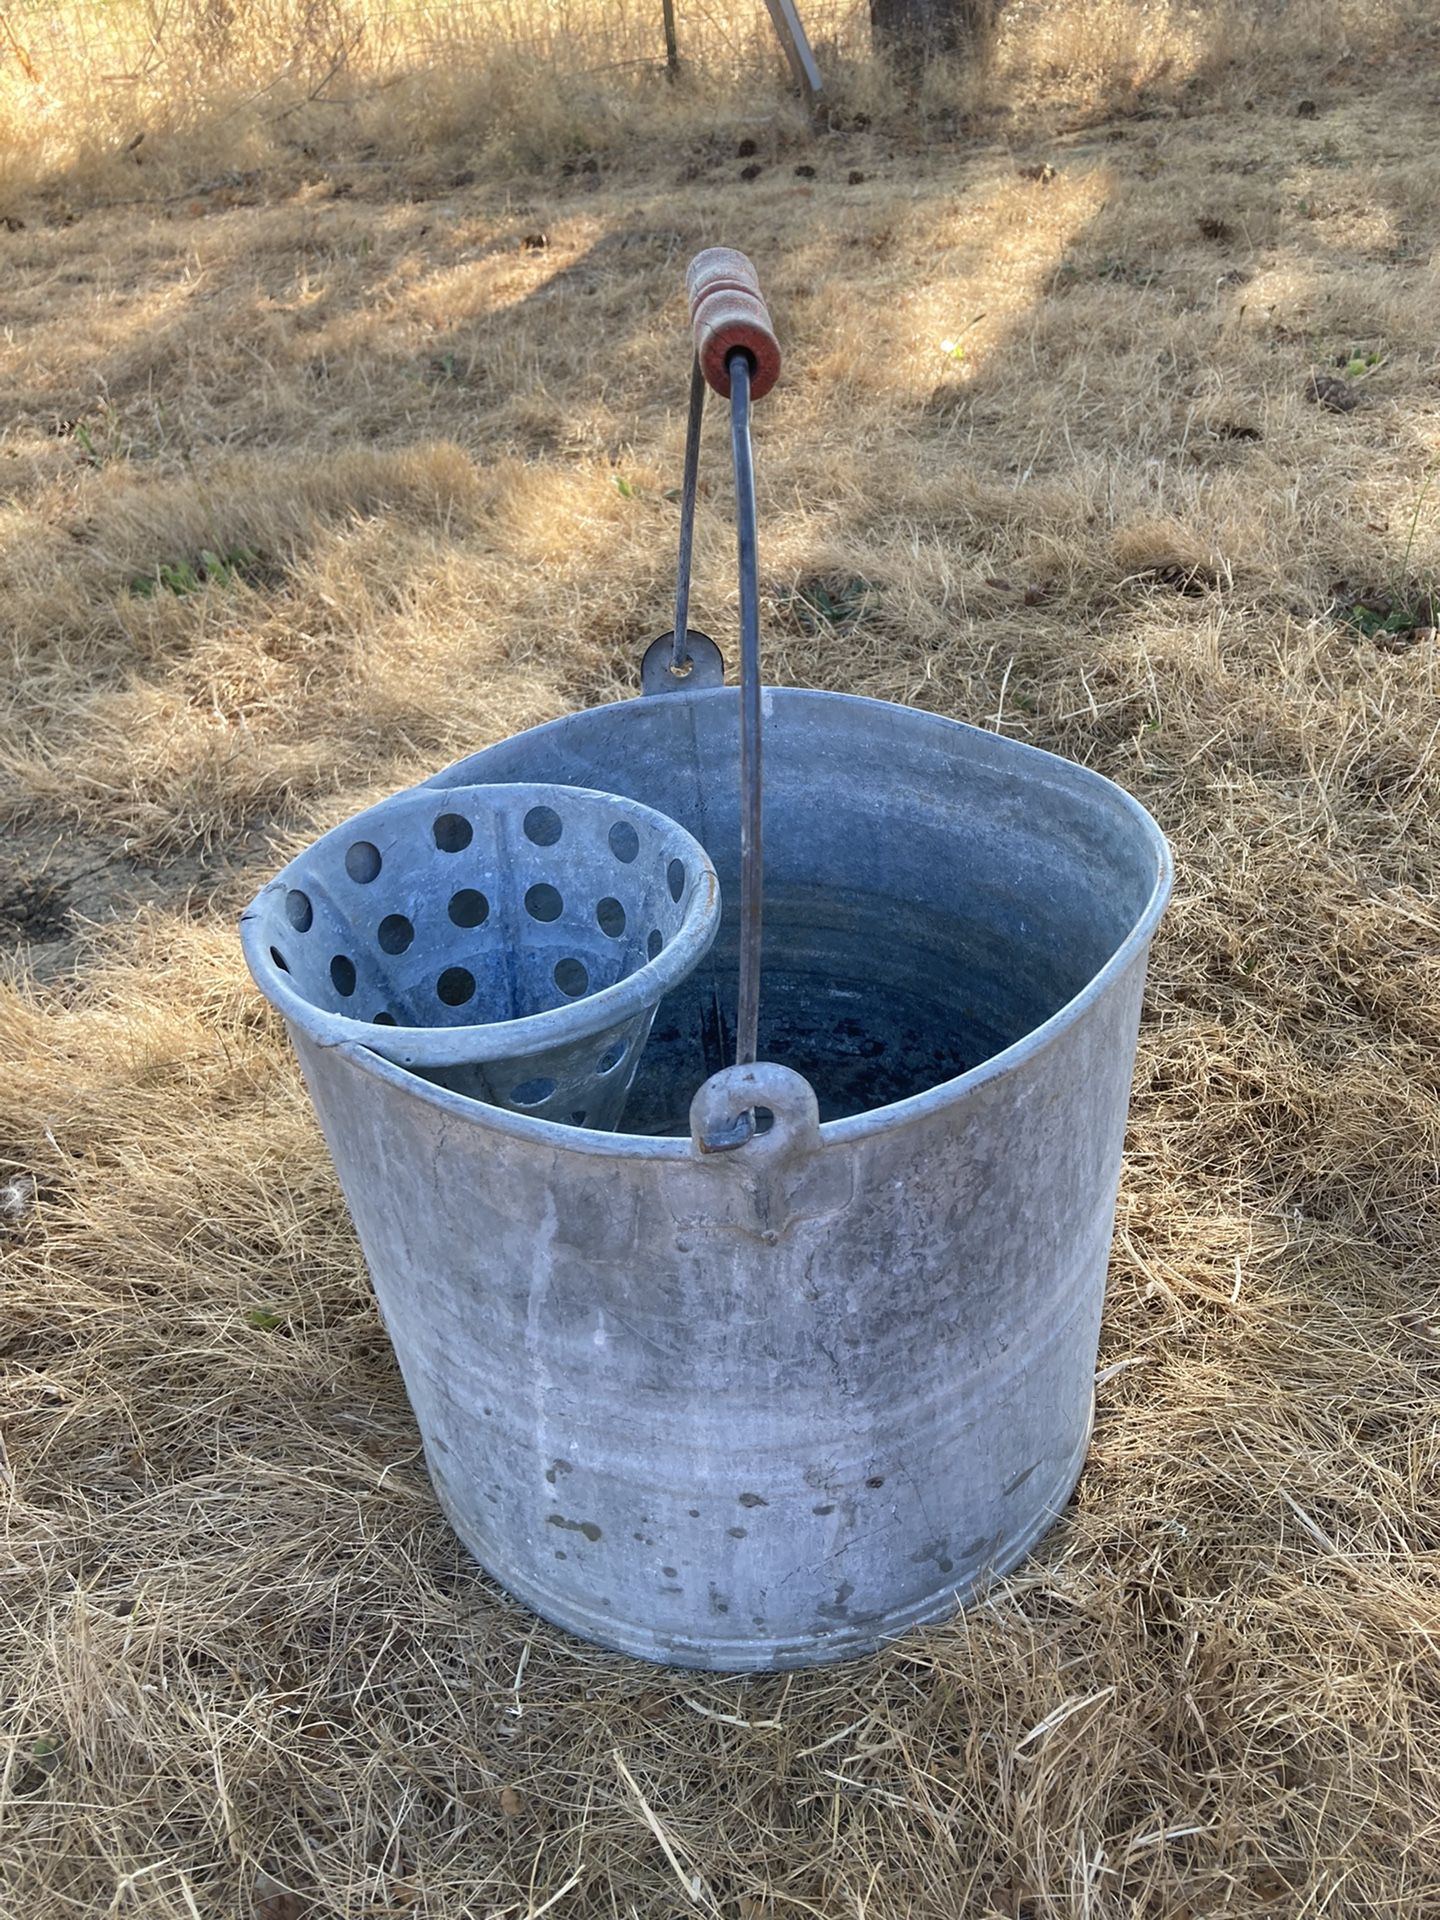 Vintage galvanized mop bucket with strainer.